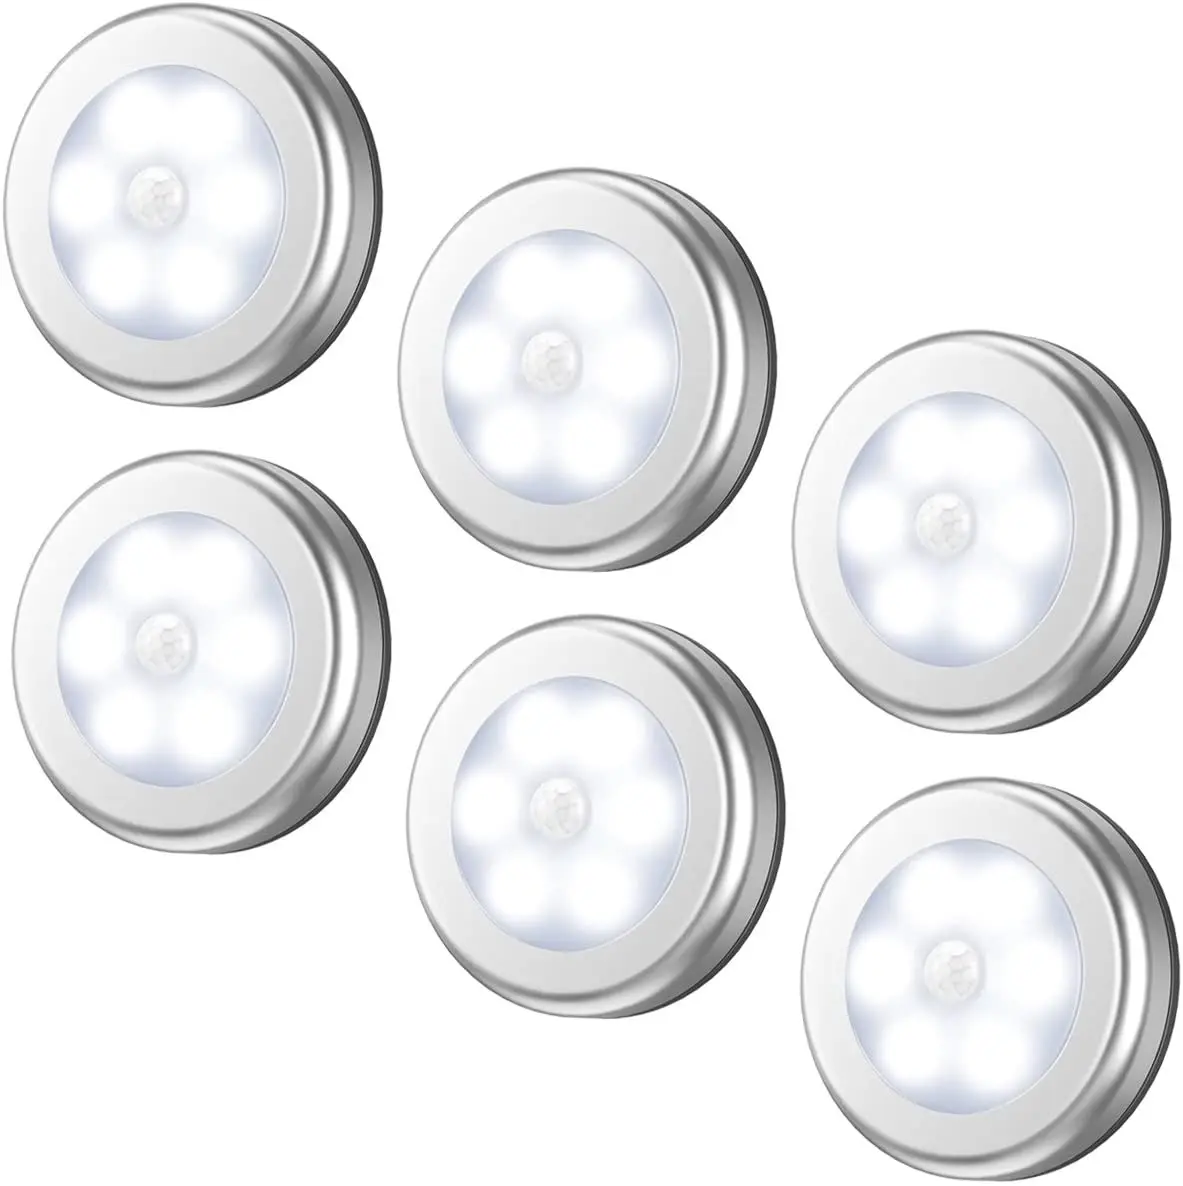 Luci del sensore di movimento a LED lampada rotonda scale luce LED illuminazione domestica intelligente per soggiorno camera da letto armadio